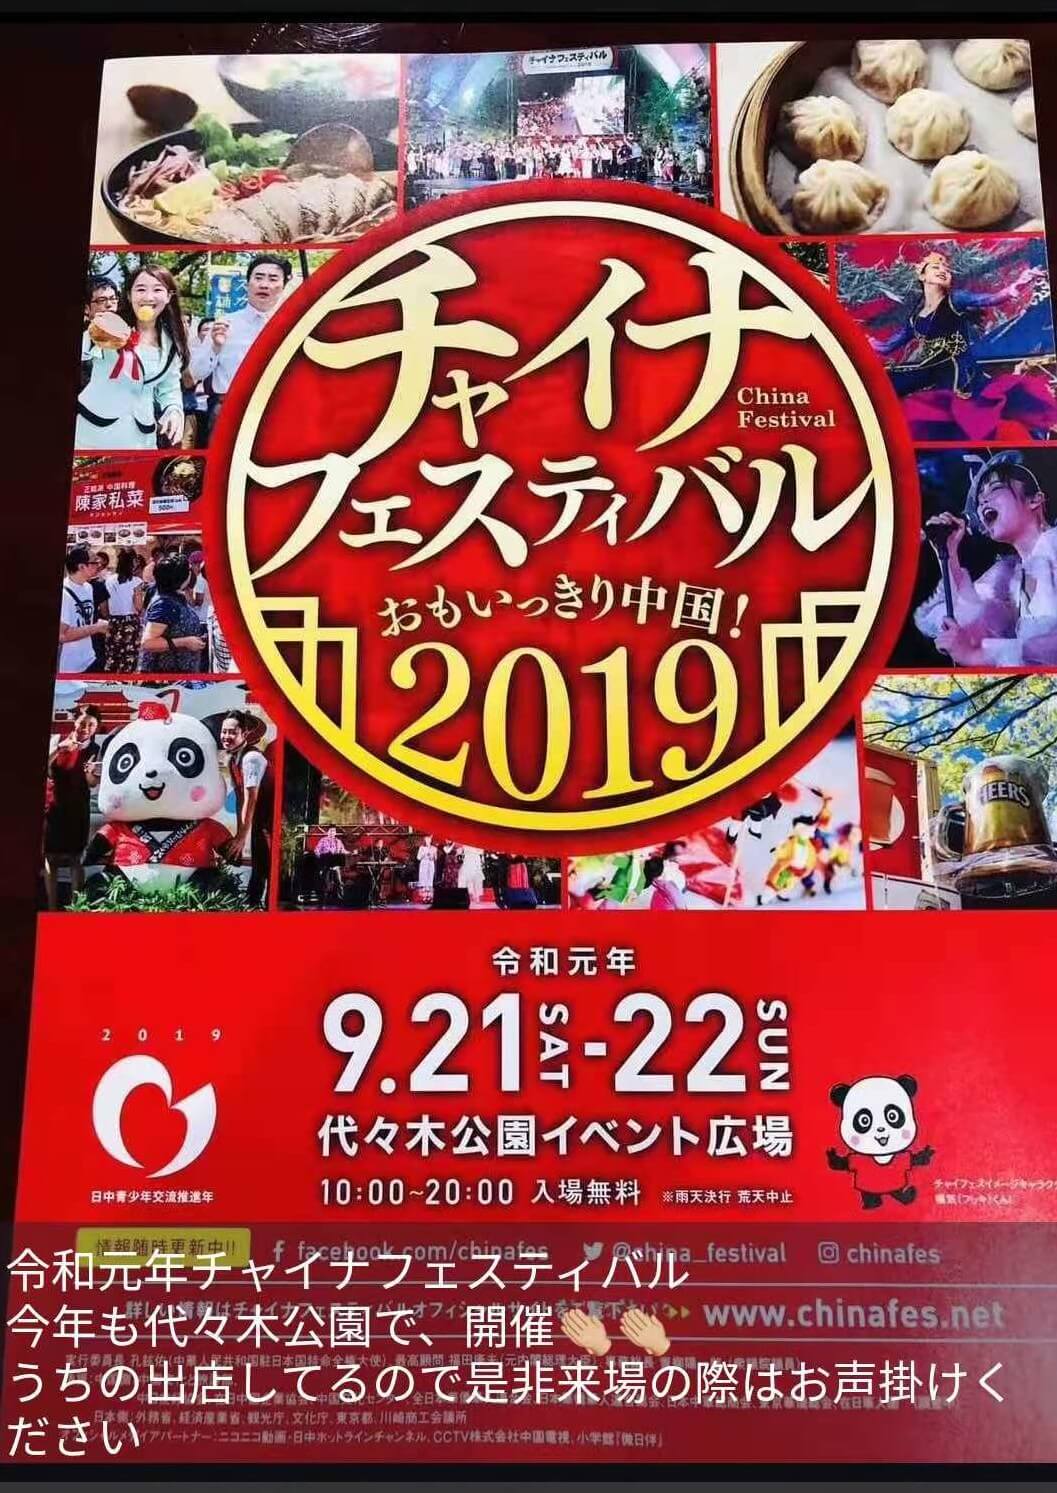 日本で行われている中国イベントのポスターの写真